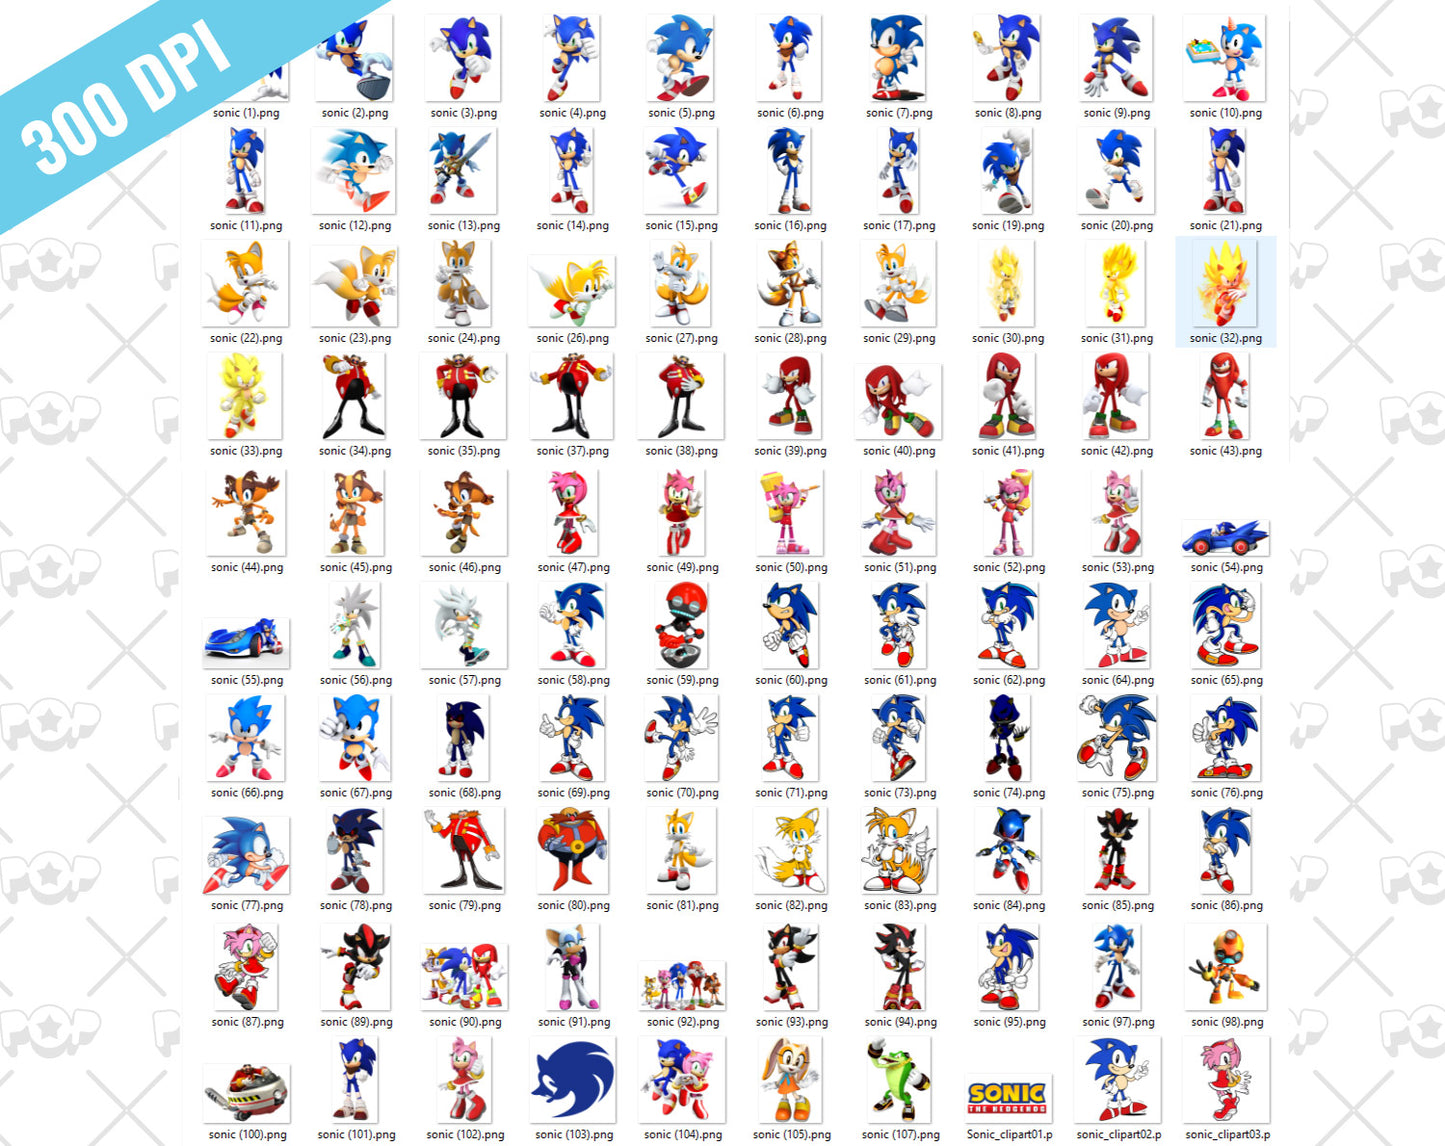 Sonic 120 cliparts bundle, transparent PNG, designs for decoration / sublimation, instant download